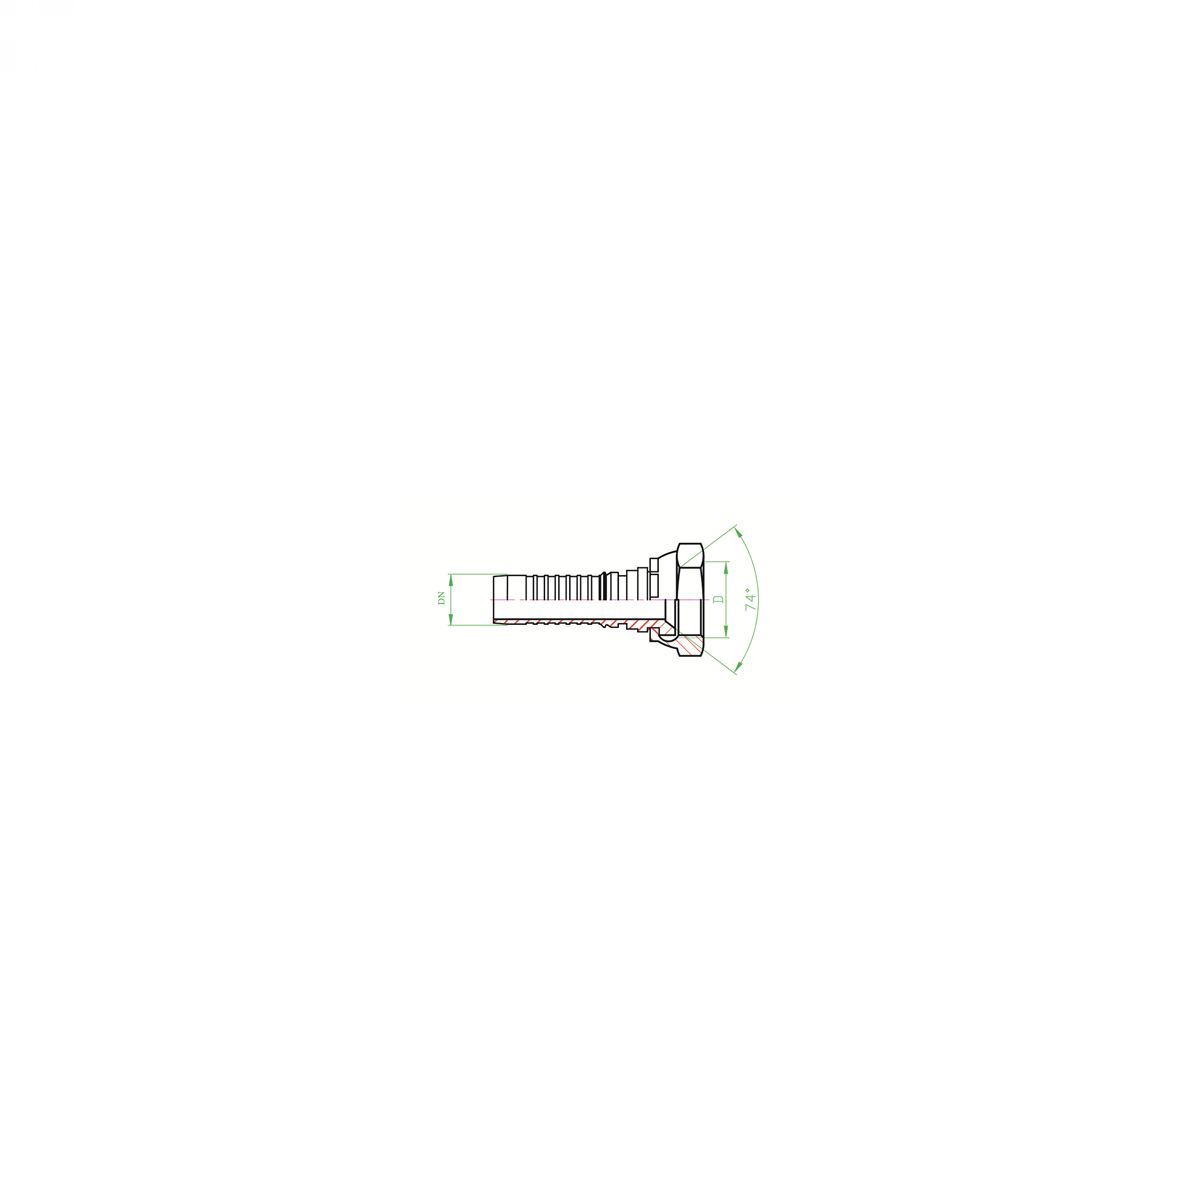 DKJ ( D60 / DUNF ) Priključci za visokotlačna hidraulička crijeva prema EN 856 4SH (INTERLOCK)